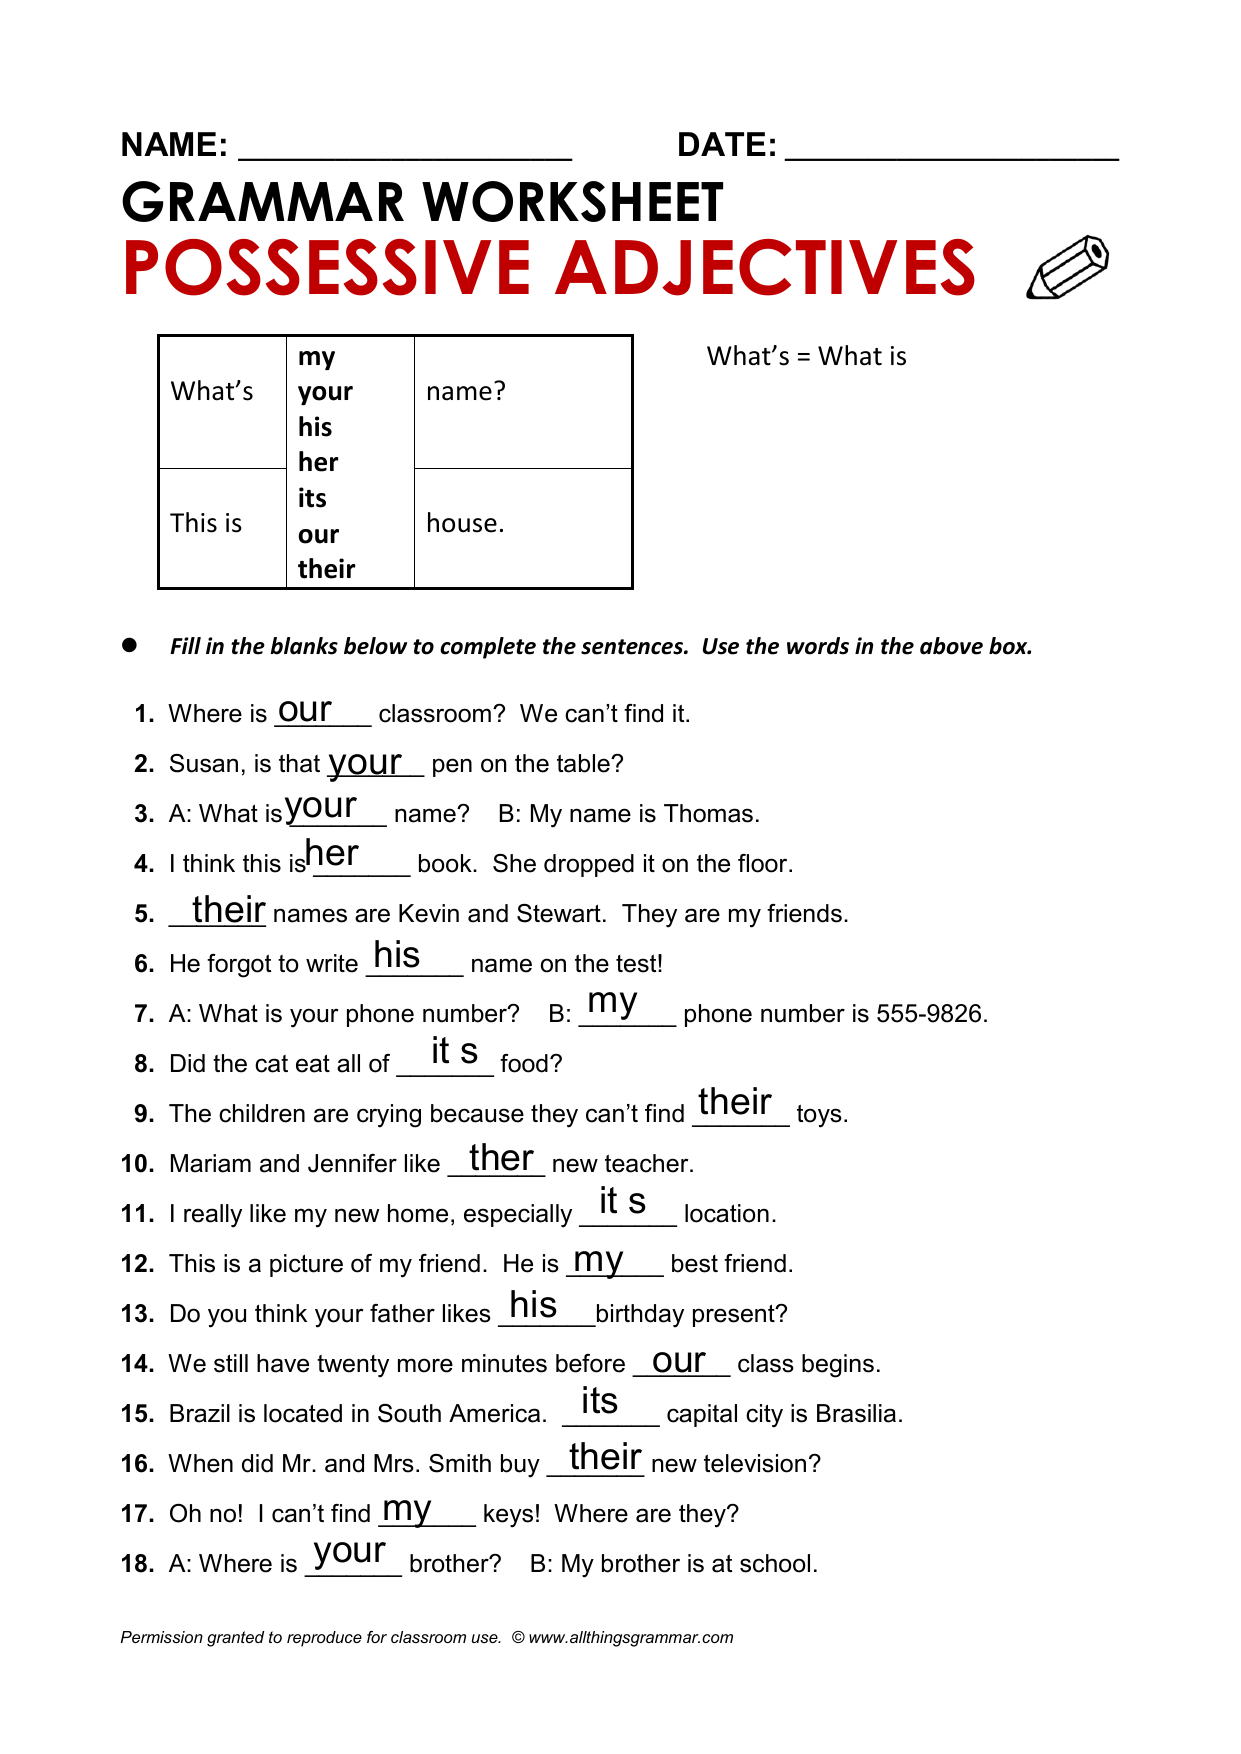 semana-3-possessive-adjectives